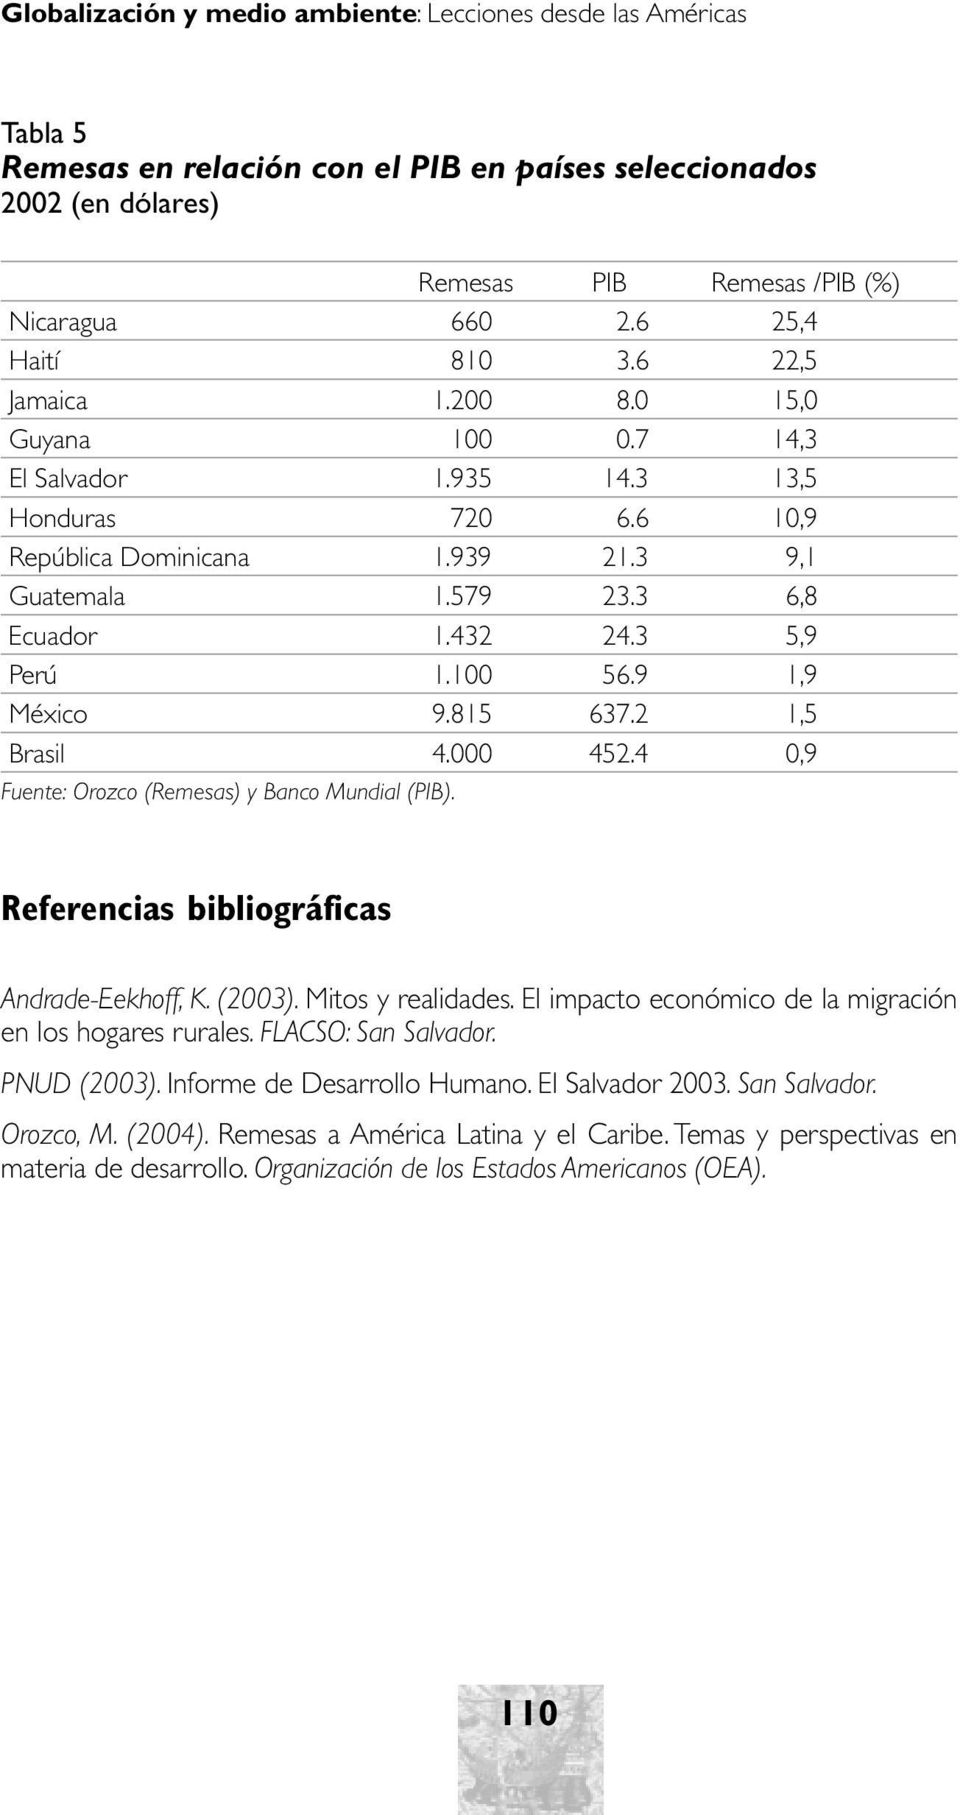 3 5,9 Perú 1.100 56.9 1,9 México 9.815 637.2 1,5 Brasil 4.000 452.4 0,9 Fuente: Orozco (Remesas) y Banco Mundial (PIB). Referencias bibliográficas Andrade-Eekhoff, K. (2003). Mitos y realidades.